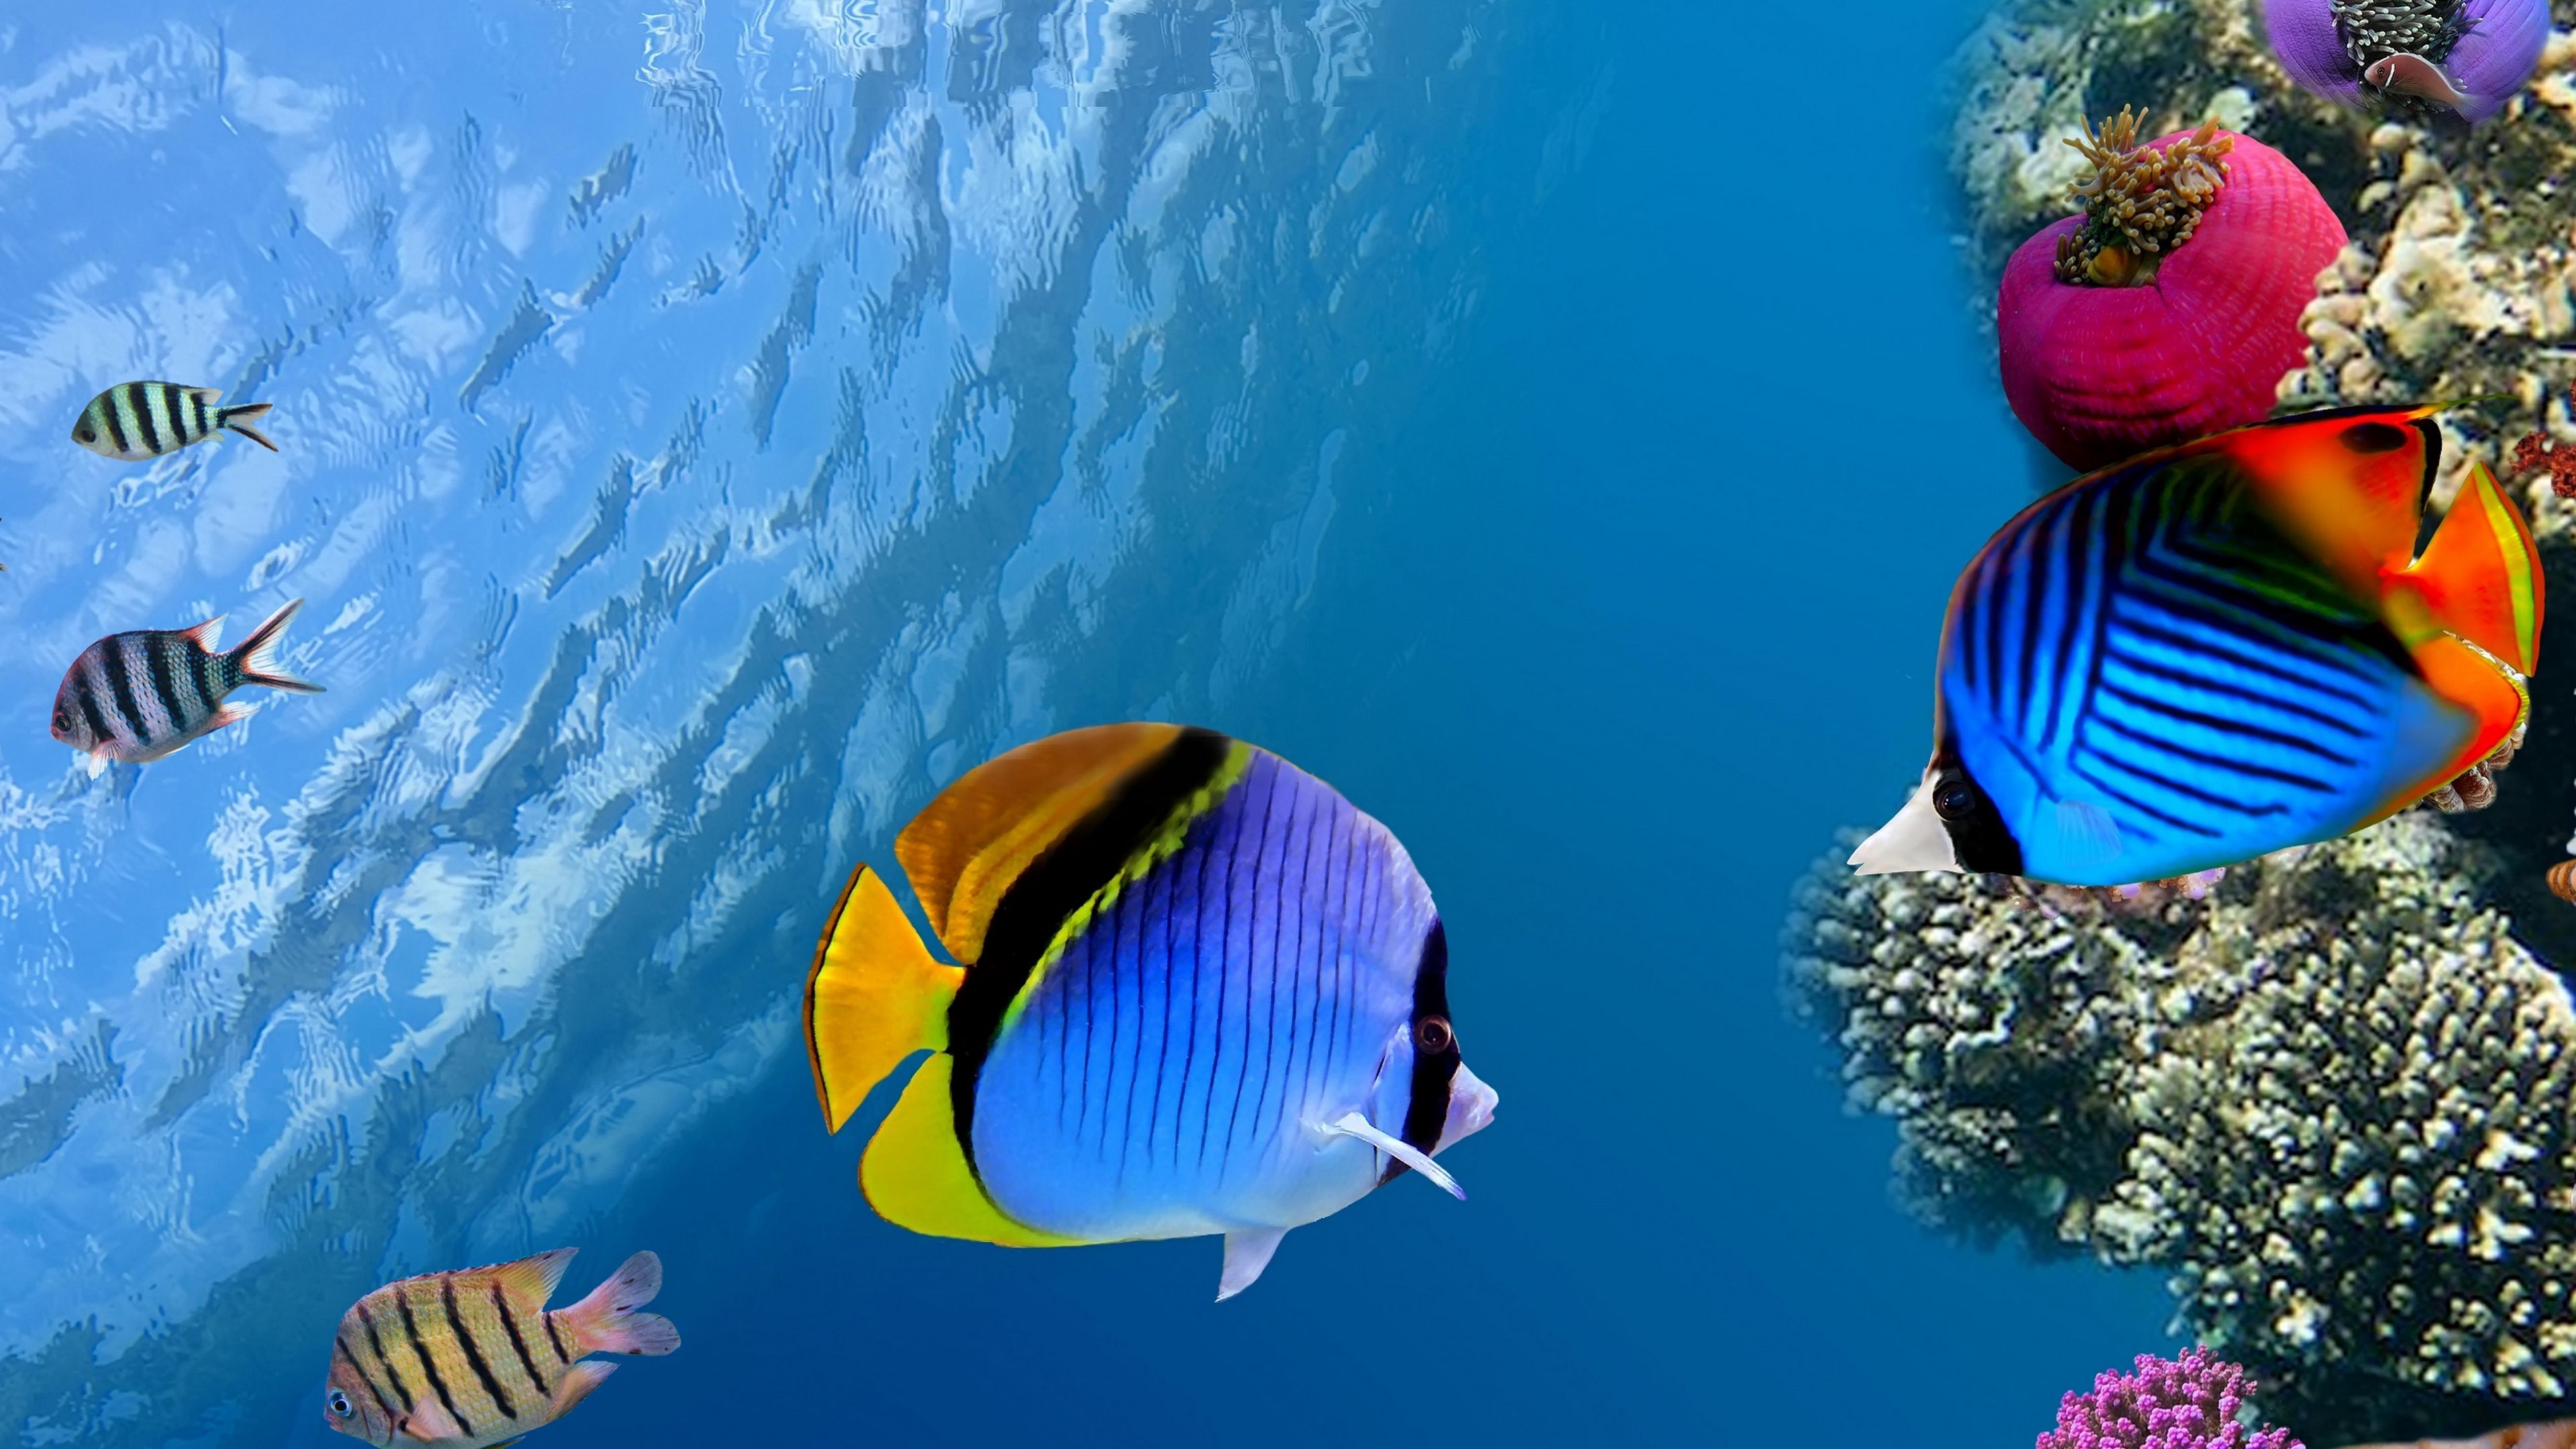 Nếu bạn là fan của đại dương, chúng tôi có những hình nền đáy biển độc đáo và đẹp mắt nhất cho bạn! Hãy cùng chúng tôi khám phá những rạn san hô đầy màu sắc, những sinh vật kỳ lạ, được phủ bởi những ánh sáng đa sắc tuyệt đẹp. Chúng tôi chắc chắn rằng bạn sẽ tìm thấy ảnh nền phù hợp với sở thích của mình. 